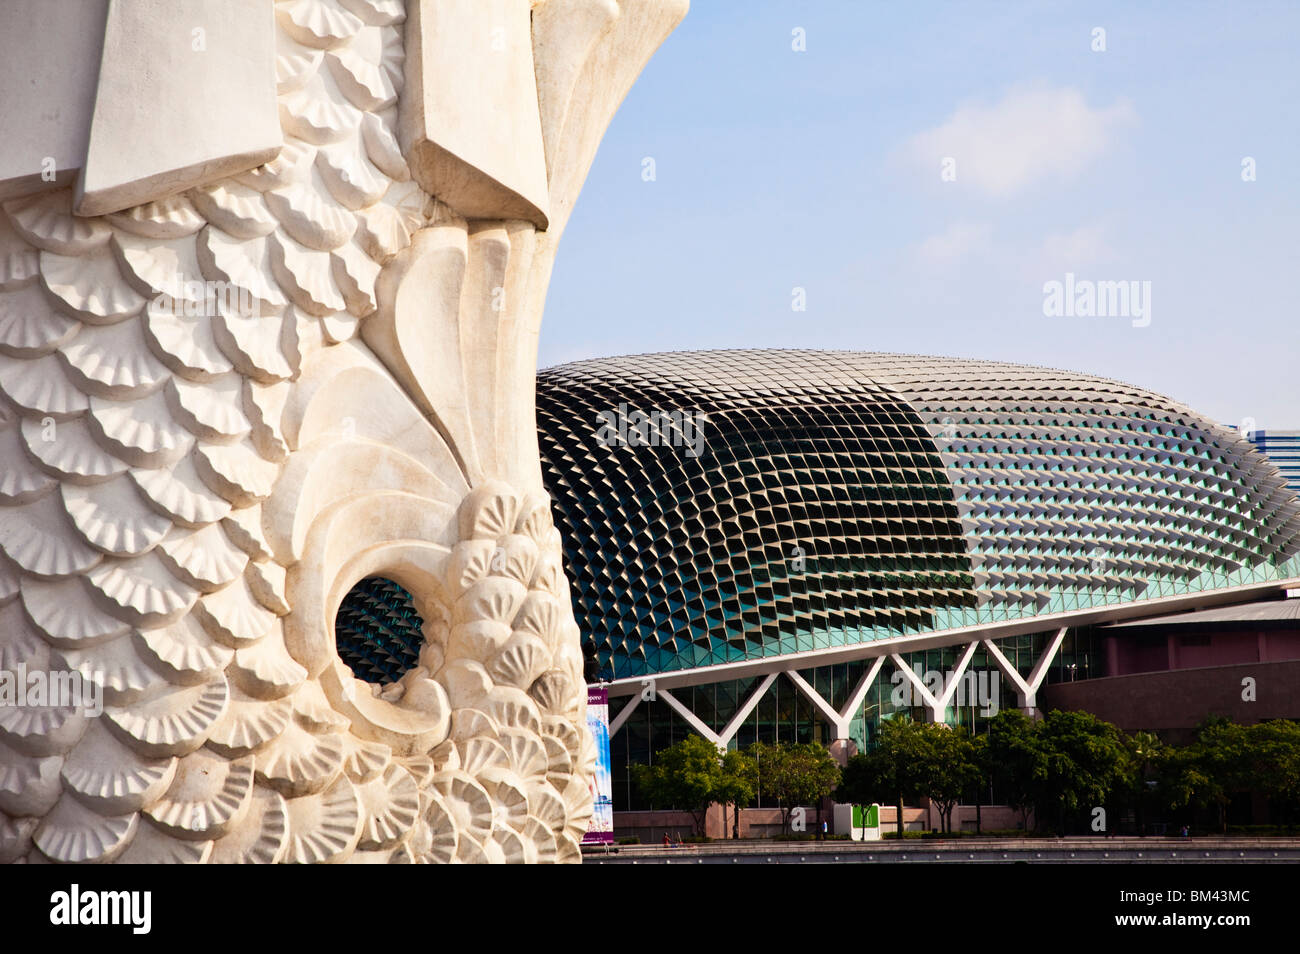 Vue sur l'Esplanade - Theatres on the Bay, de la statue du Merlion, Singapour Banque D'Images